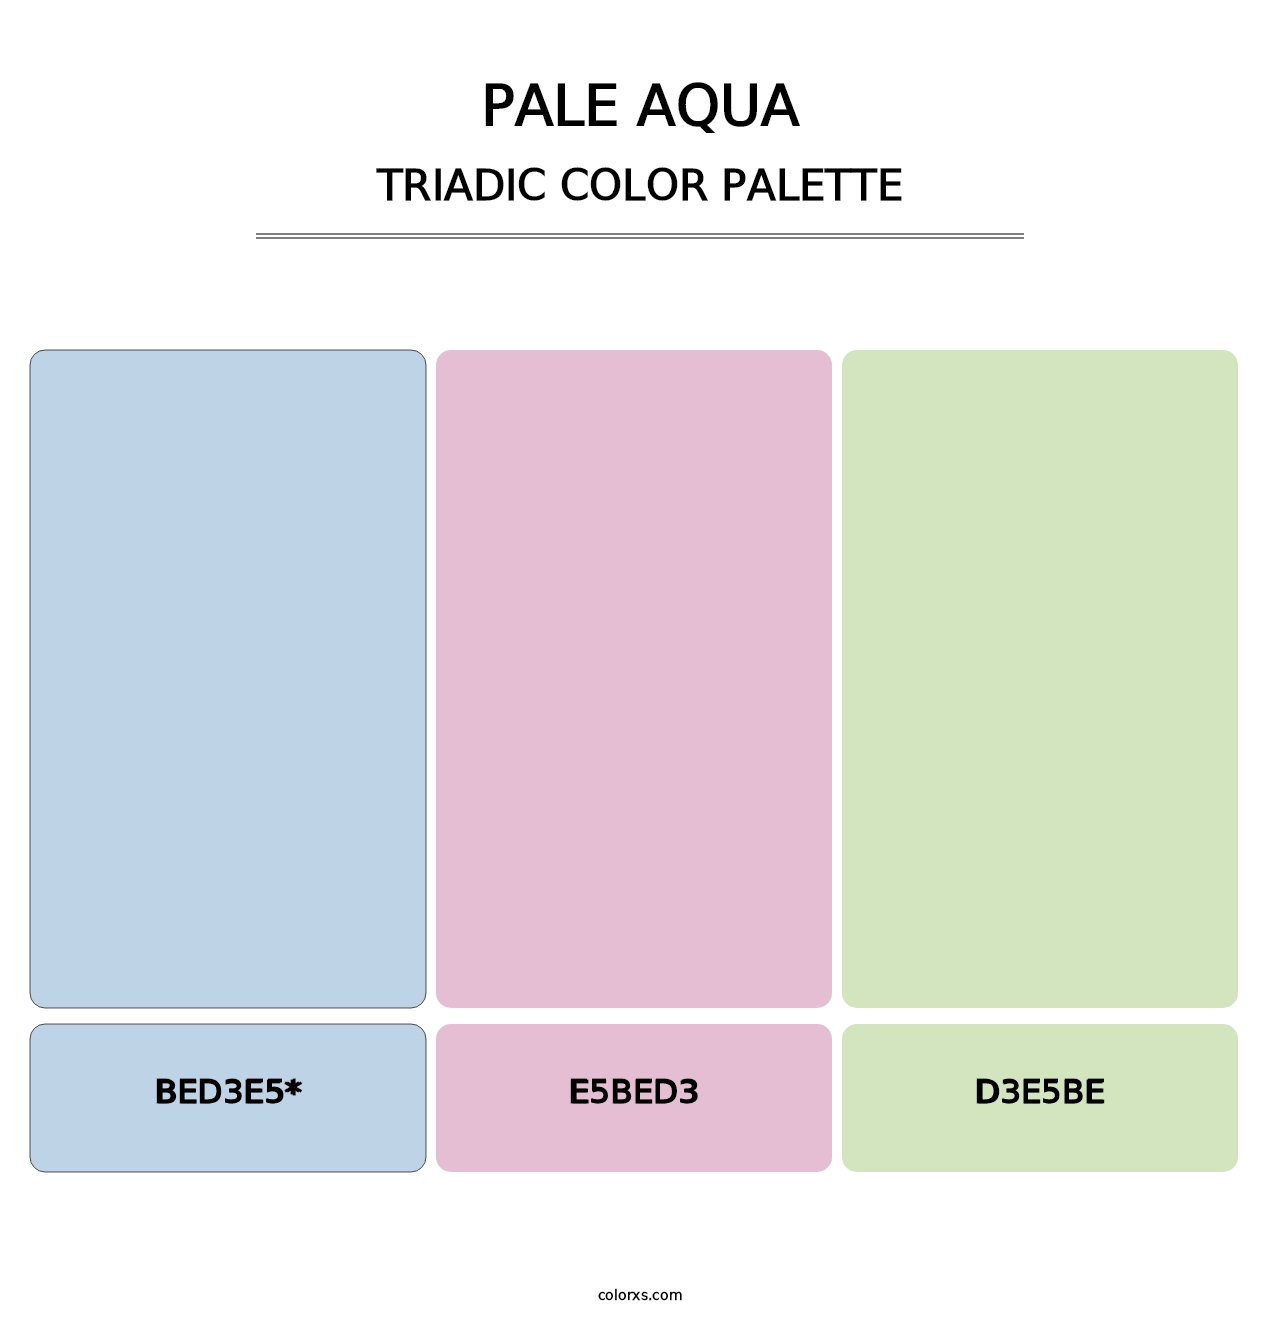 Pale Aqua - Triadic Color Palette